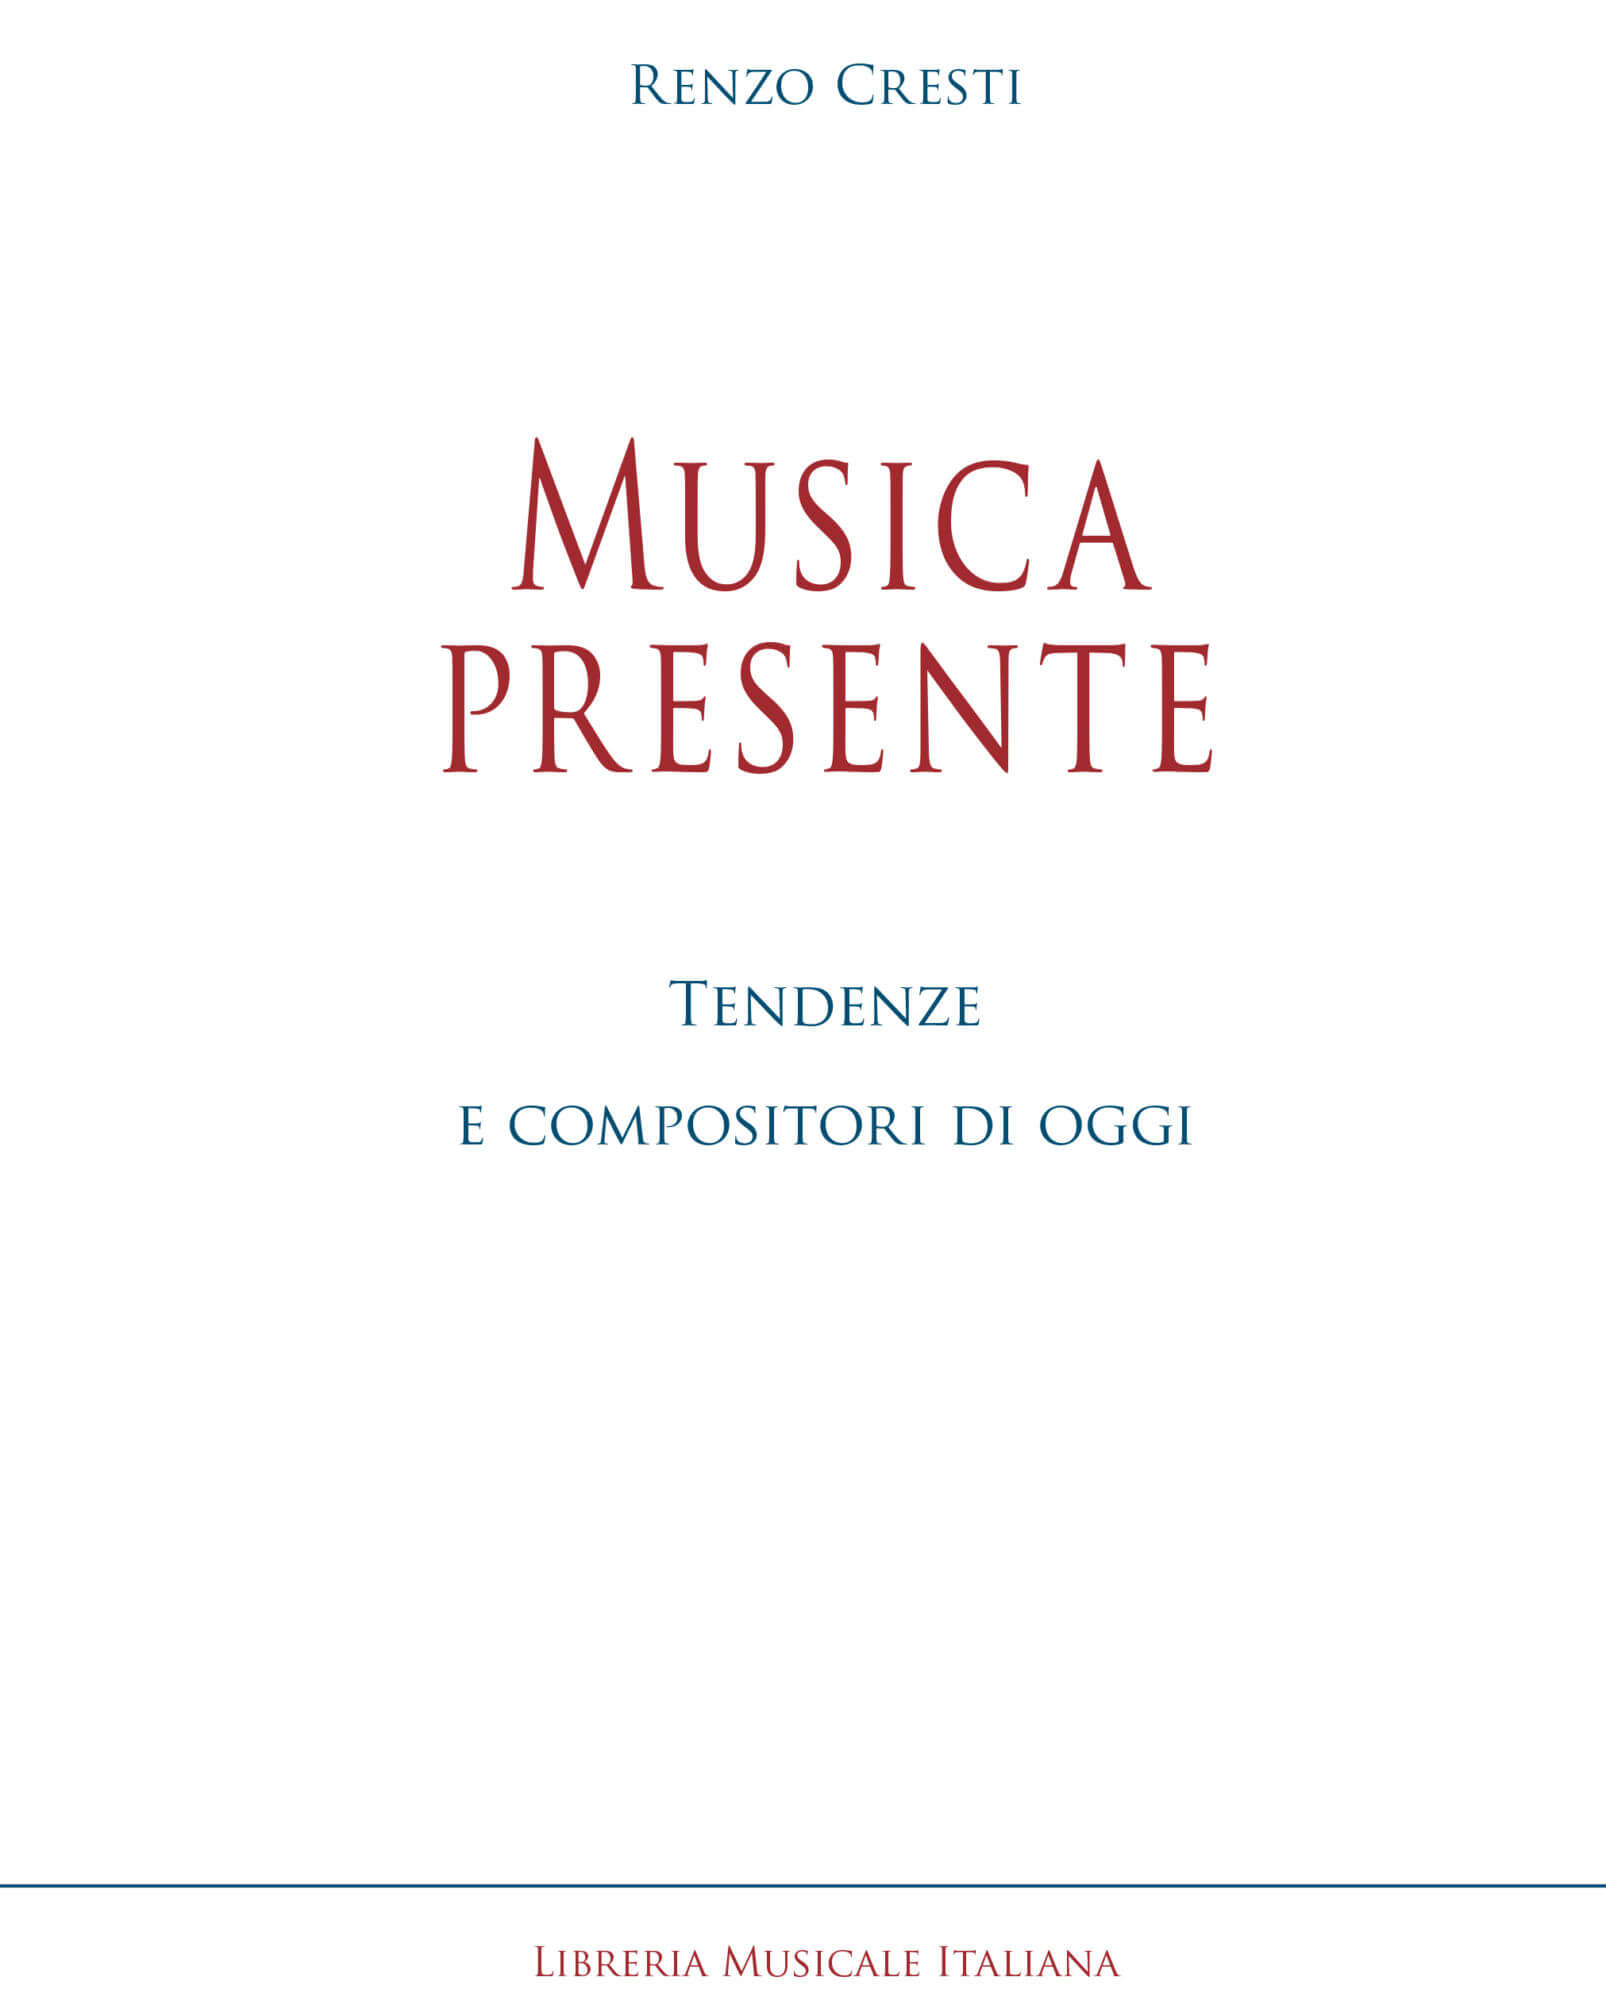 Renzo Cresti, “Musica presente, tendenze e compositori di oggi”